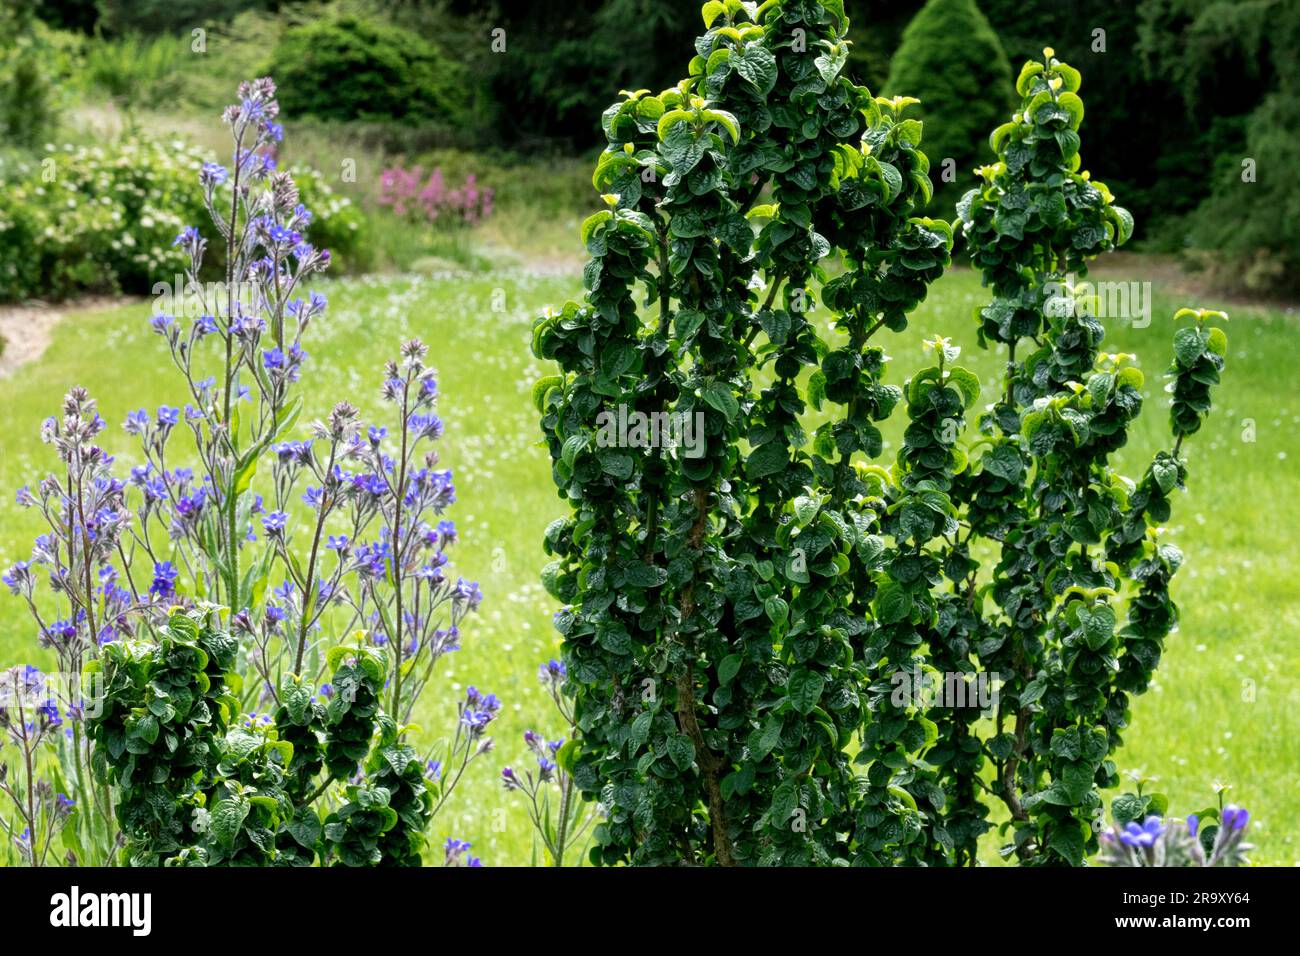 Cornus sanguinea 'Compressa', Evergreen, Dogwood, Garden Stock Photo